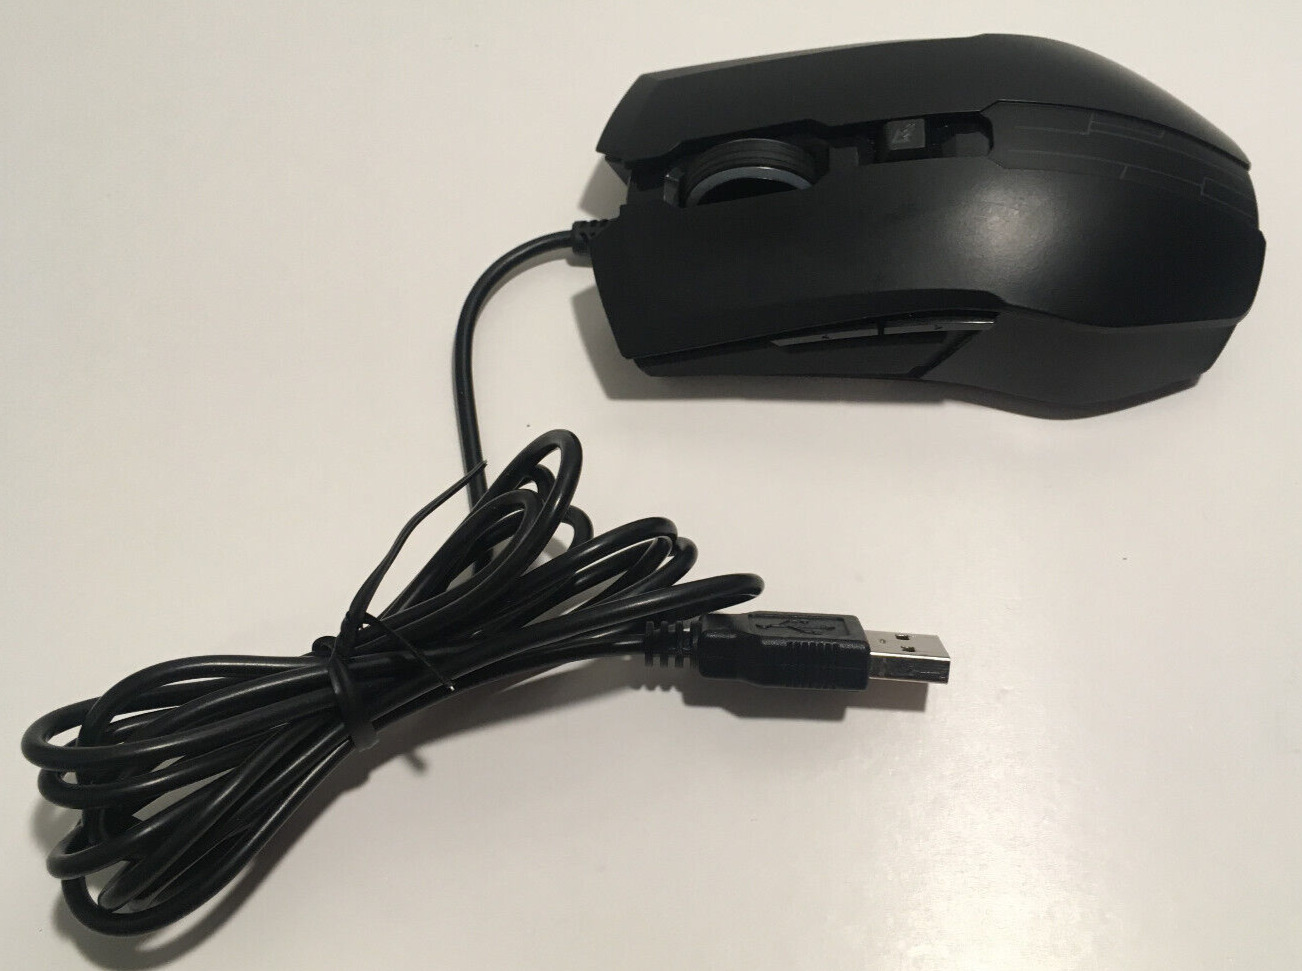 Cooler Master Devastator II / 2 Gaming Mouse - Black